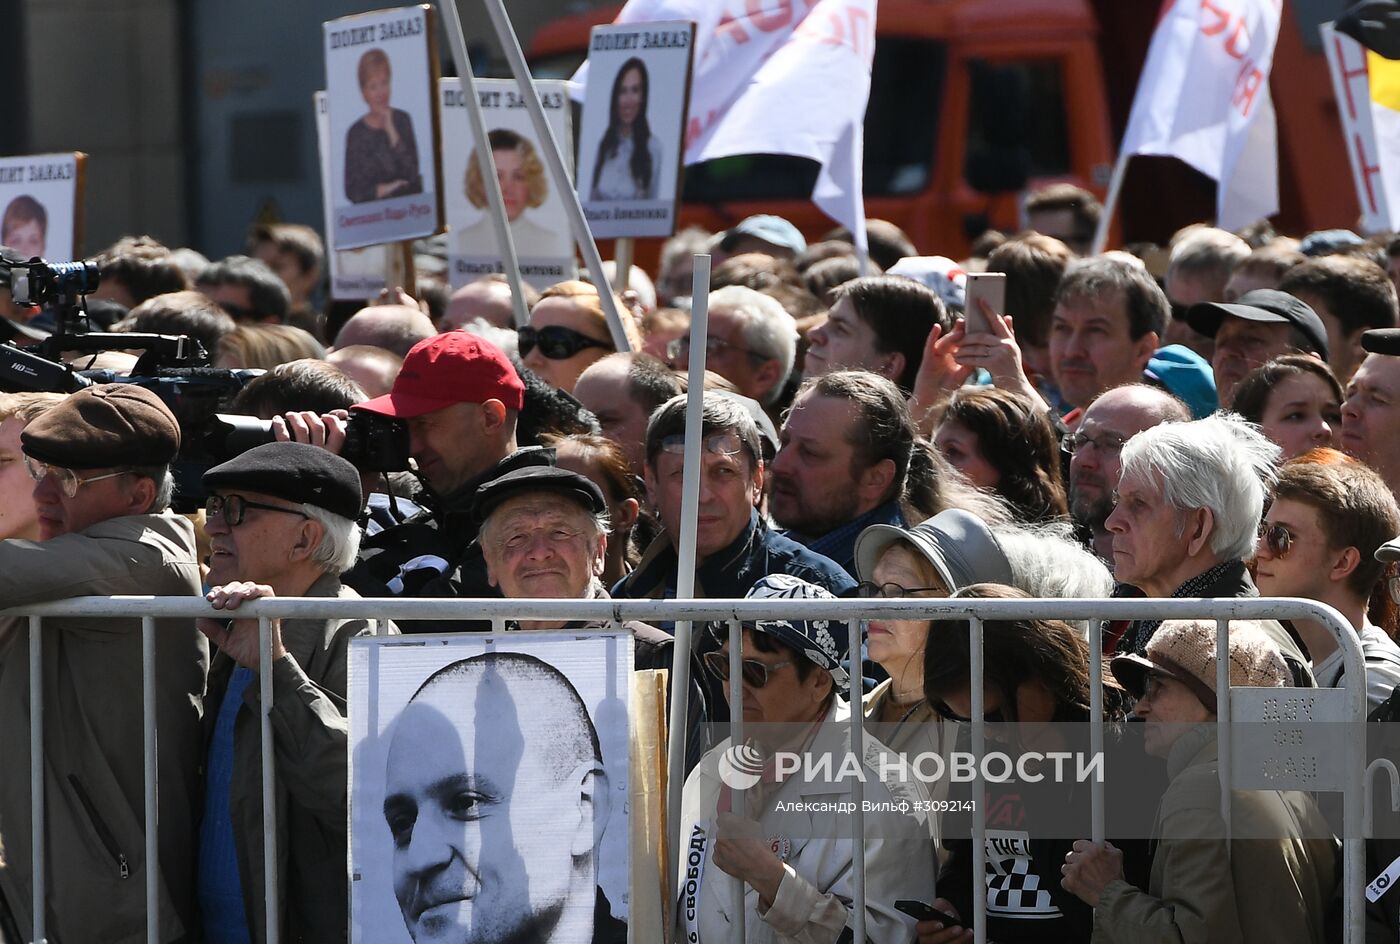 Шествия и митинг оппозиции в Москве